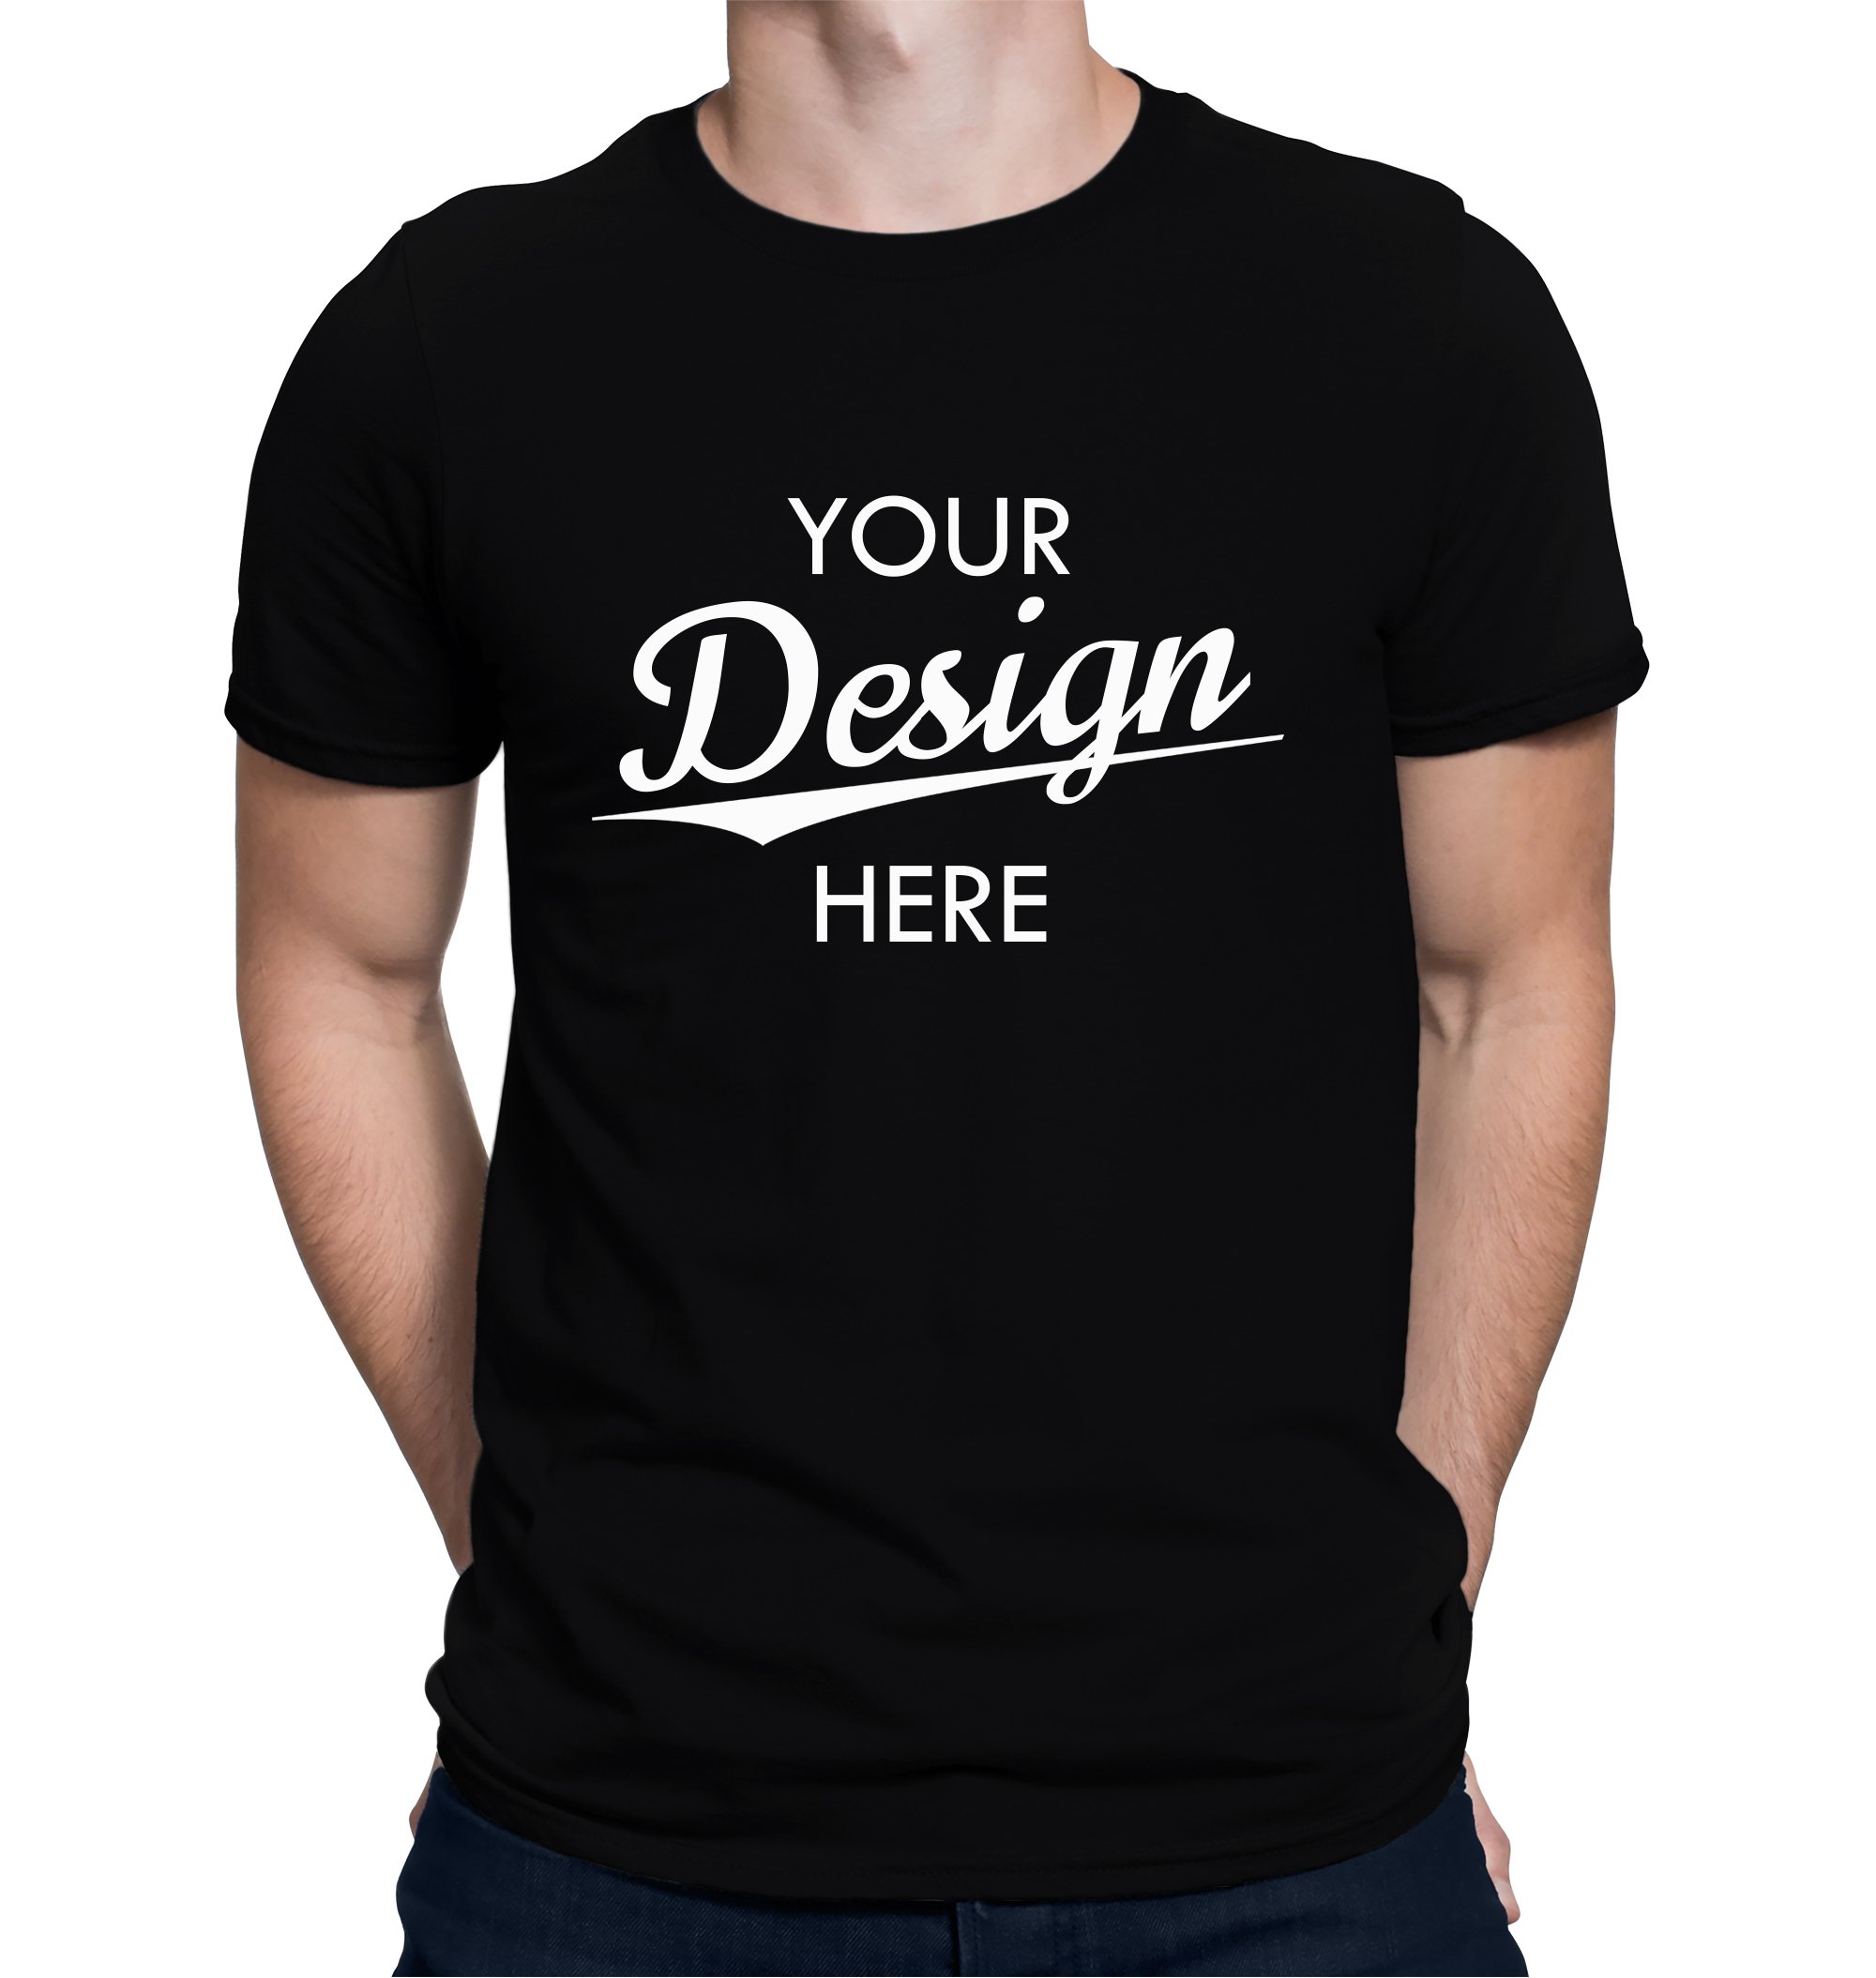 Timebomb T-Shirts – Croydon T-Shirt Printing